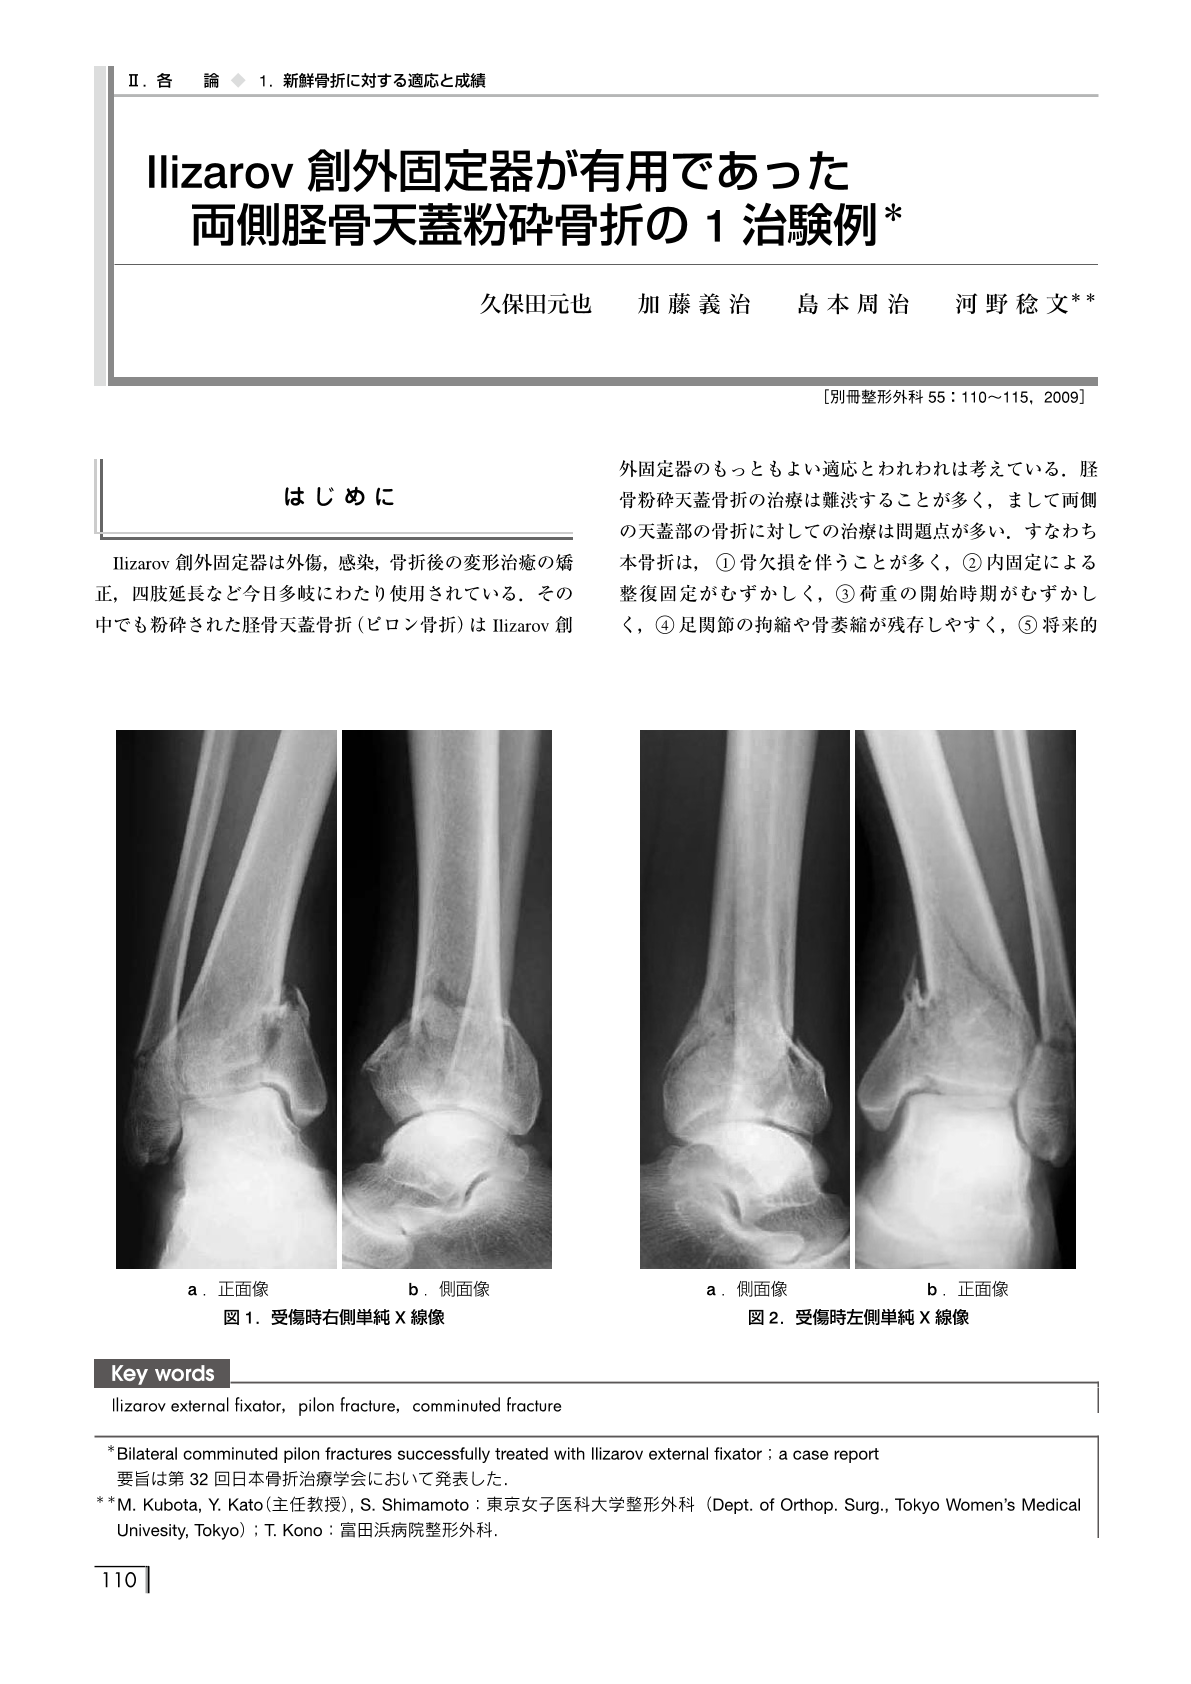 新鮮骨折に対する適応と成績 Ilizarov創外固定器が有用であった両側脛骨天蓋粉砕骨折の1治験例 別冊整形外科 1巻55号 医書 Jp